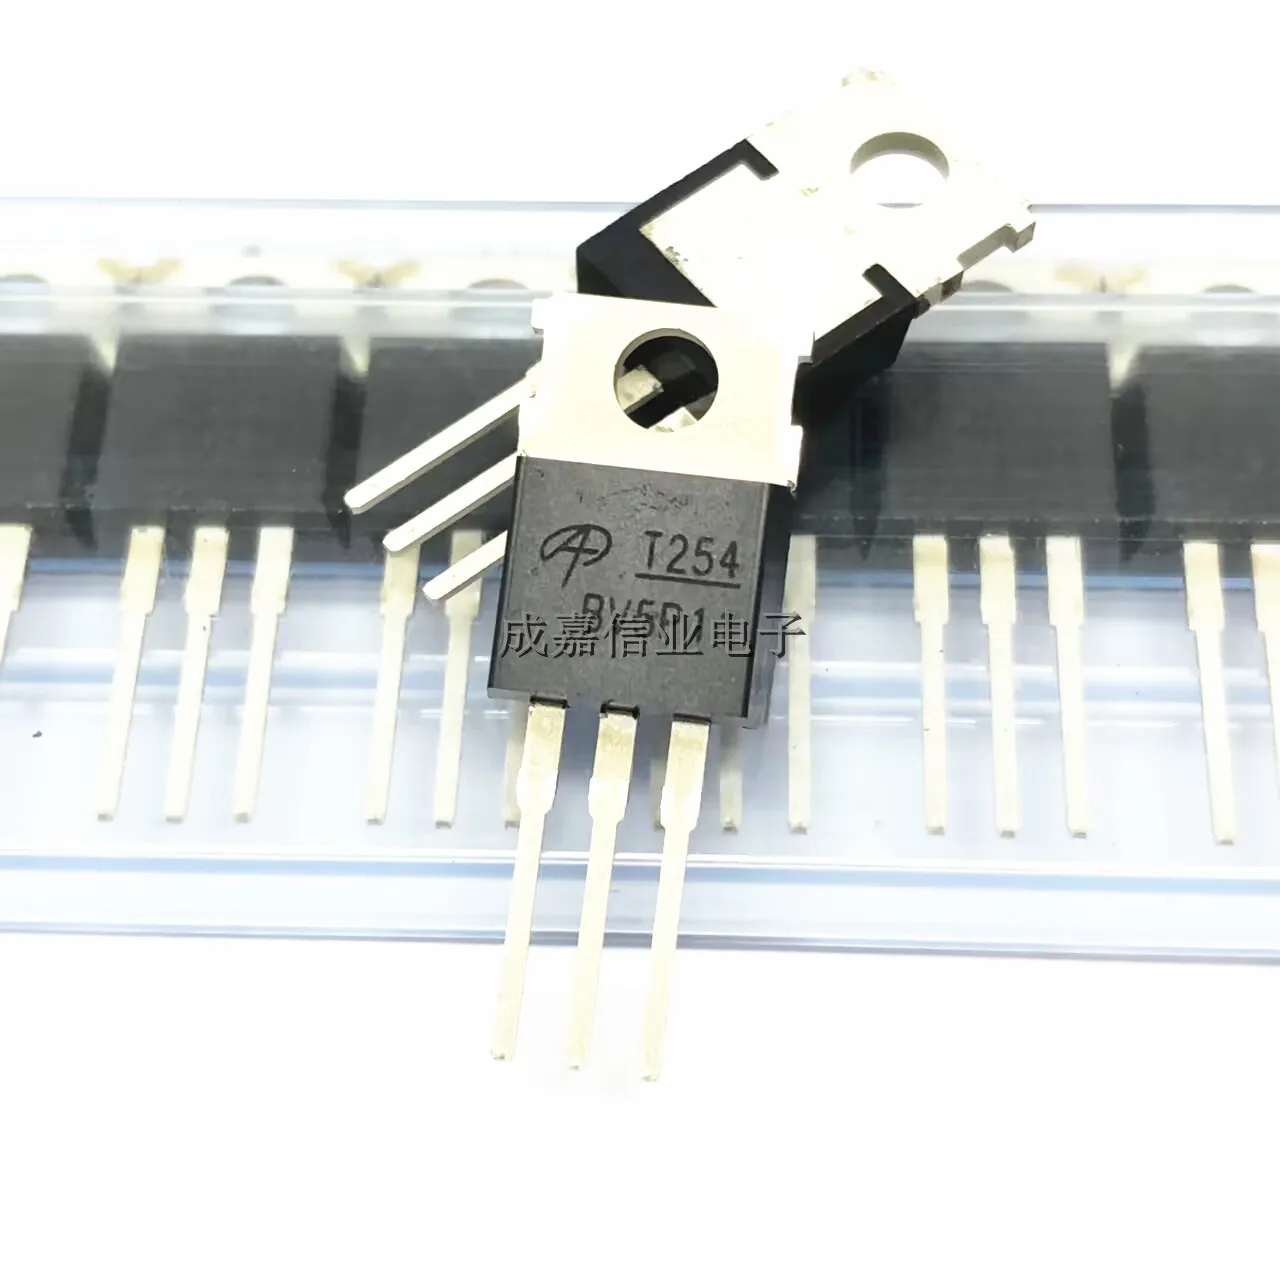 10 шт./лот транзистор полевого эффекта AOT254L TO-220-3 маркировка; T254 N-канальный транзистор 150 в 175 а рабочая температура; -55 ℃ ~ + ℃ транзистор полевого эффекта irf9540n irf9540 to 220 10 шт оригинал